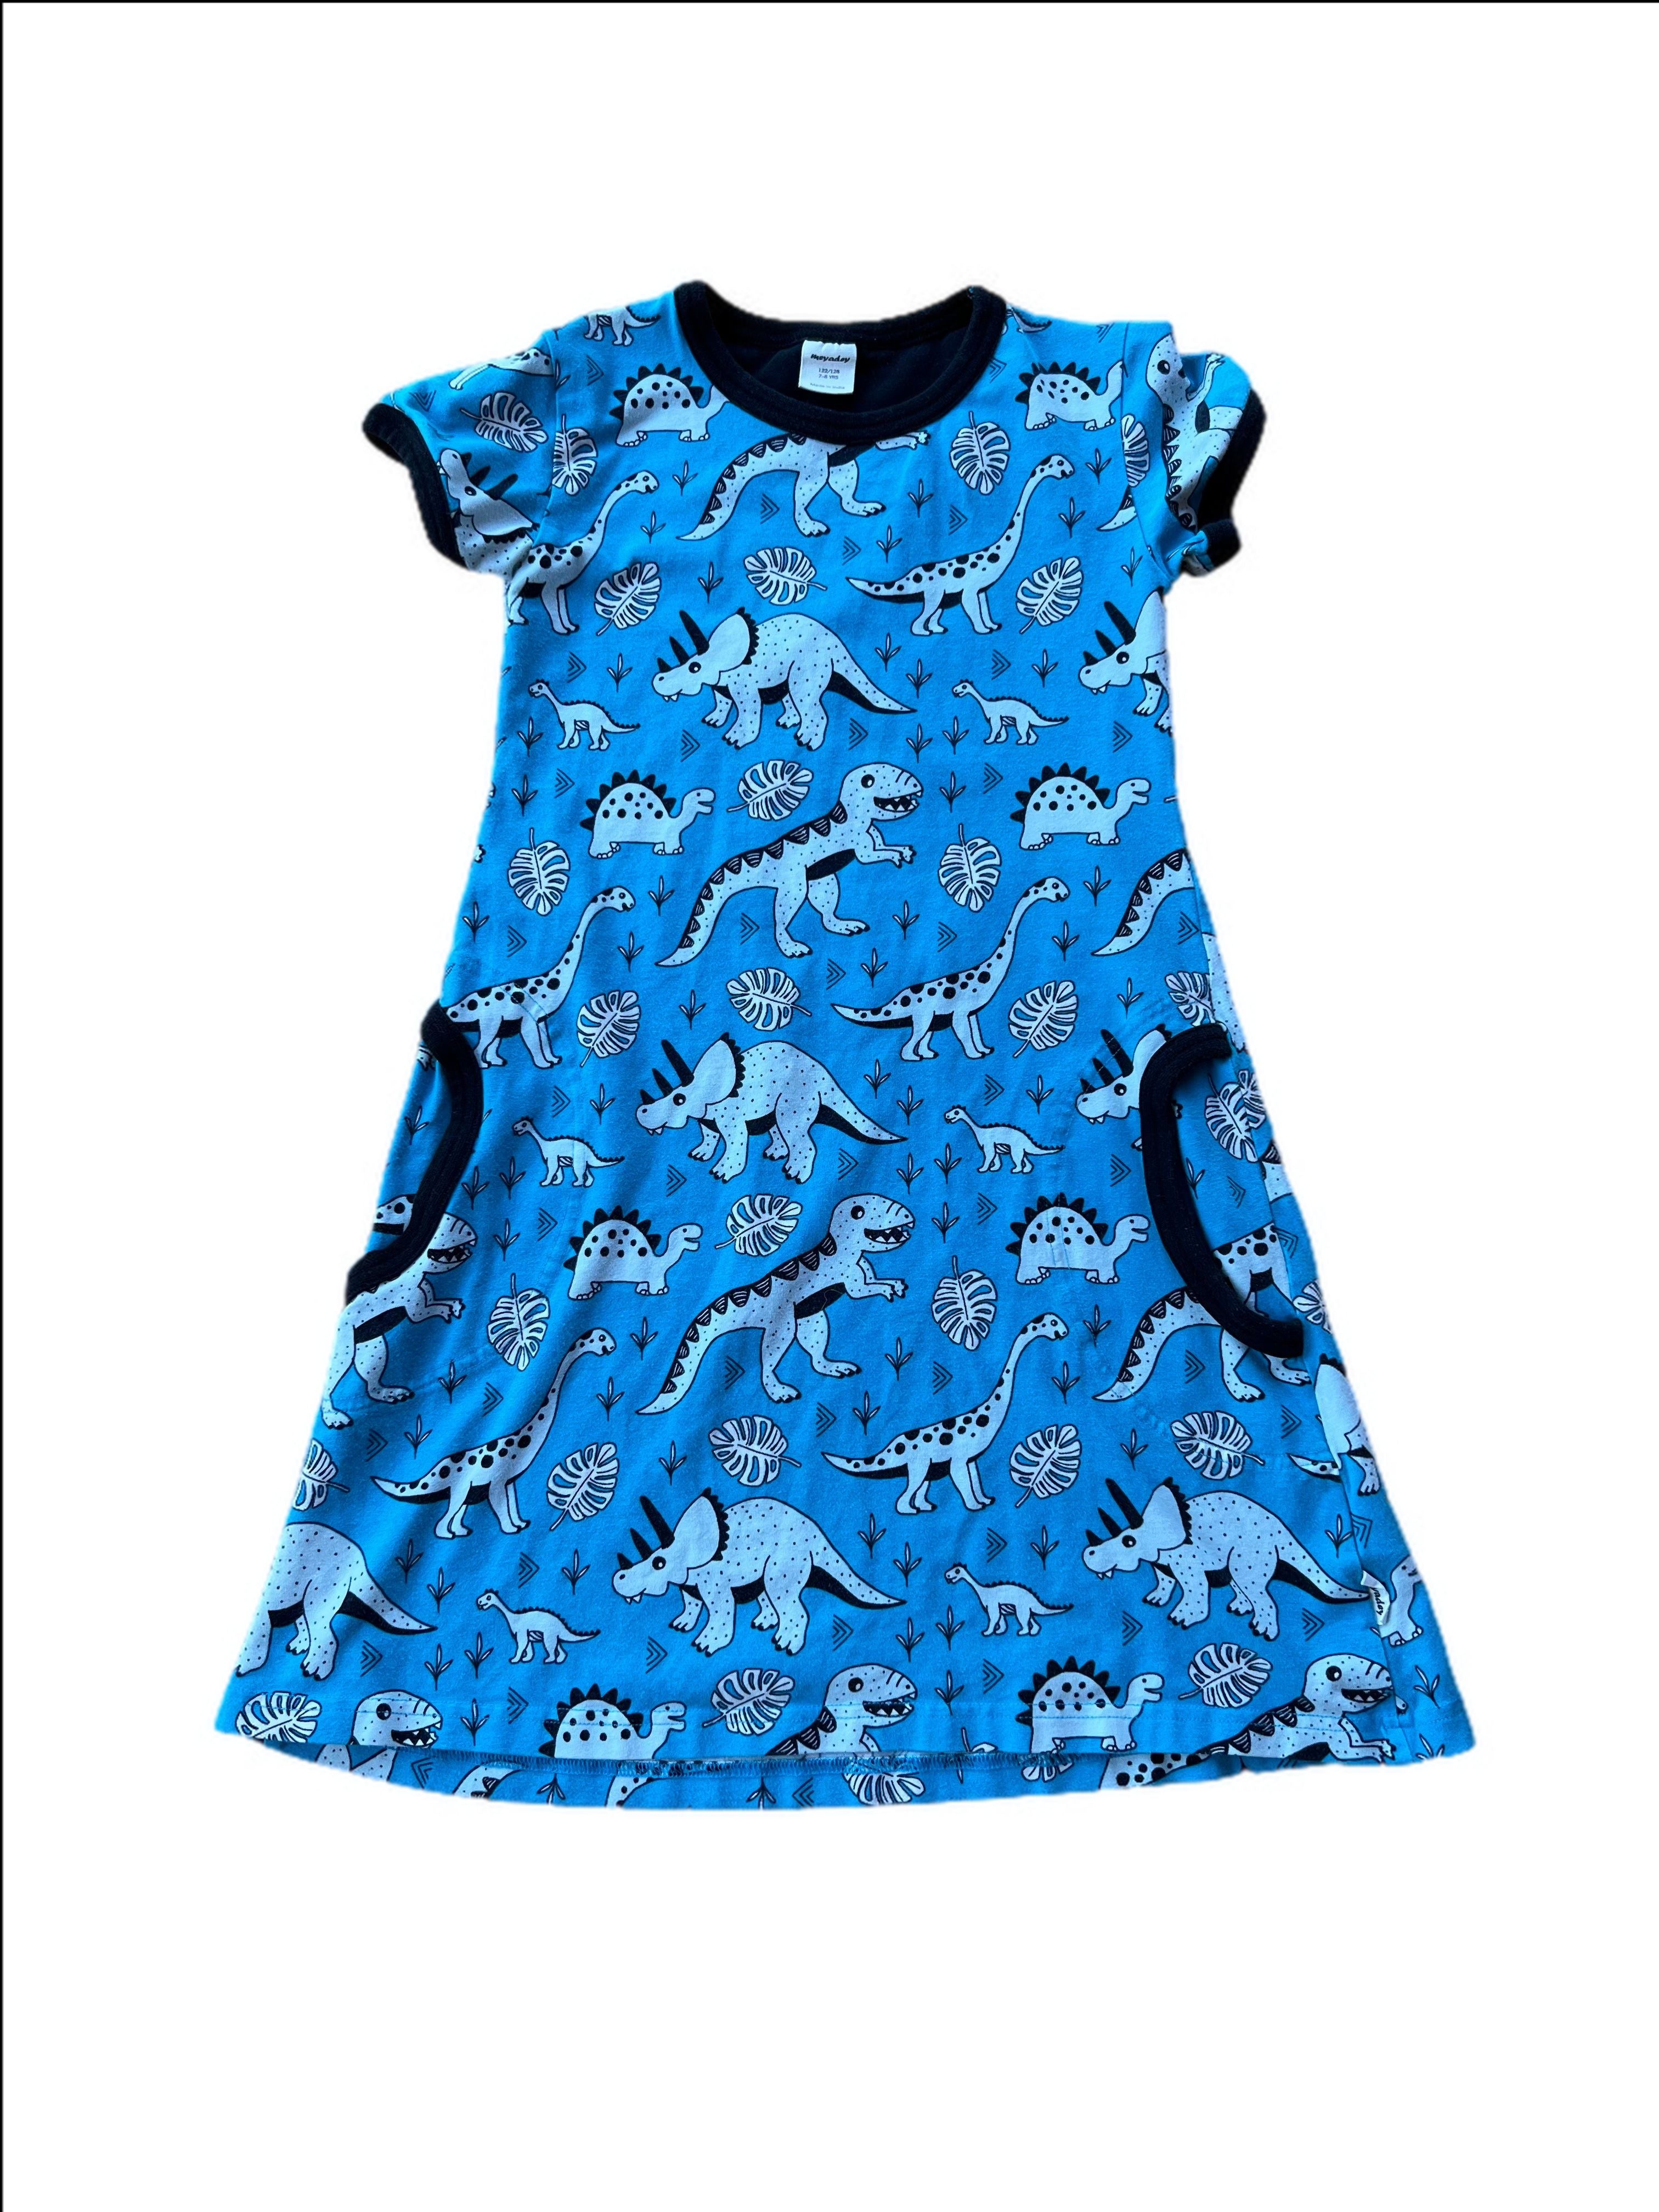 Dinosaur dress